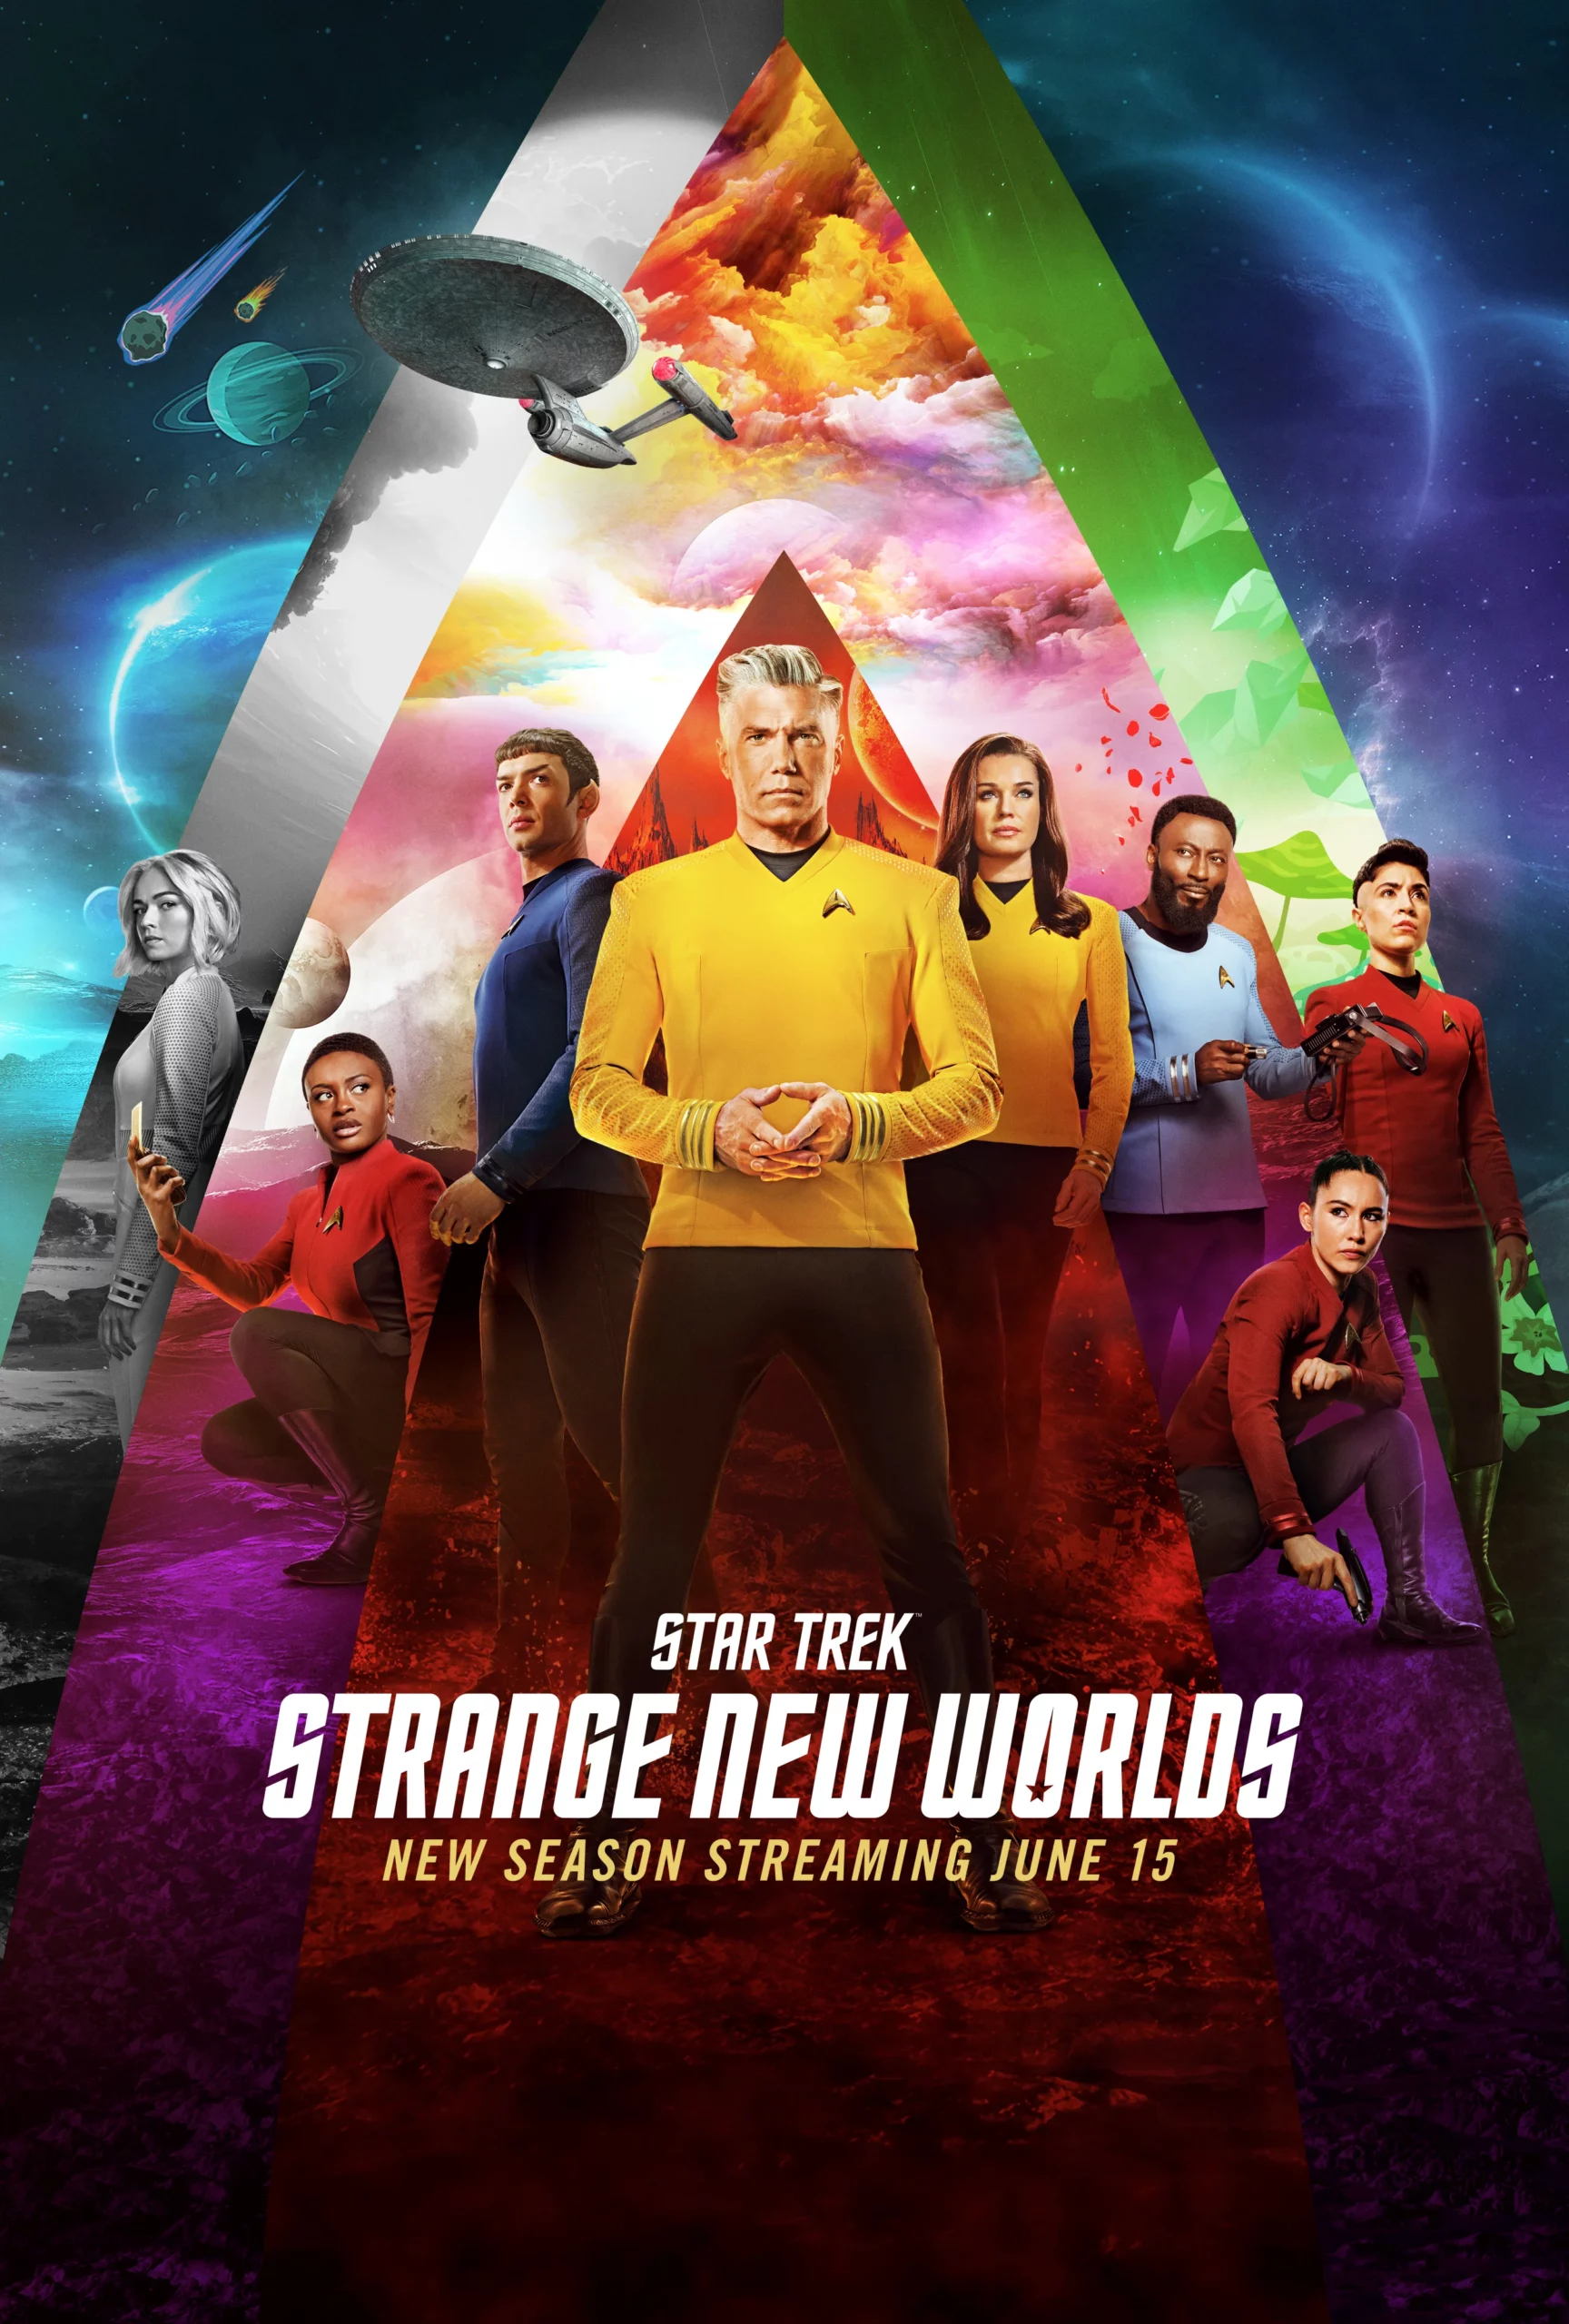 Star Trek Strange New Worlds Season 2 cast poster